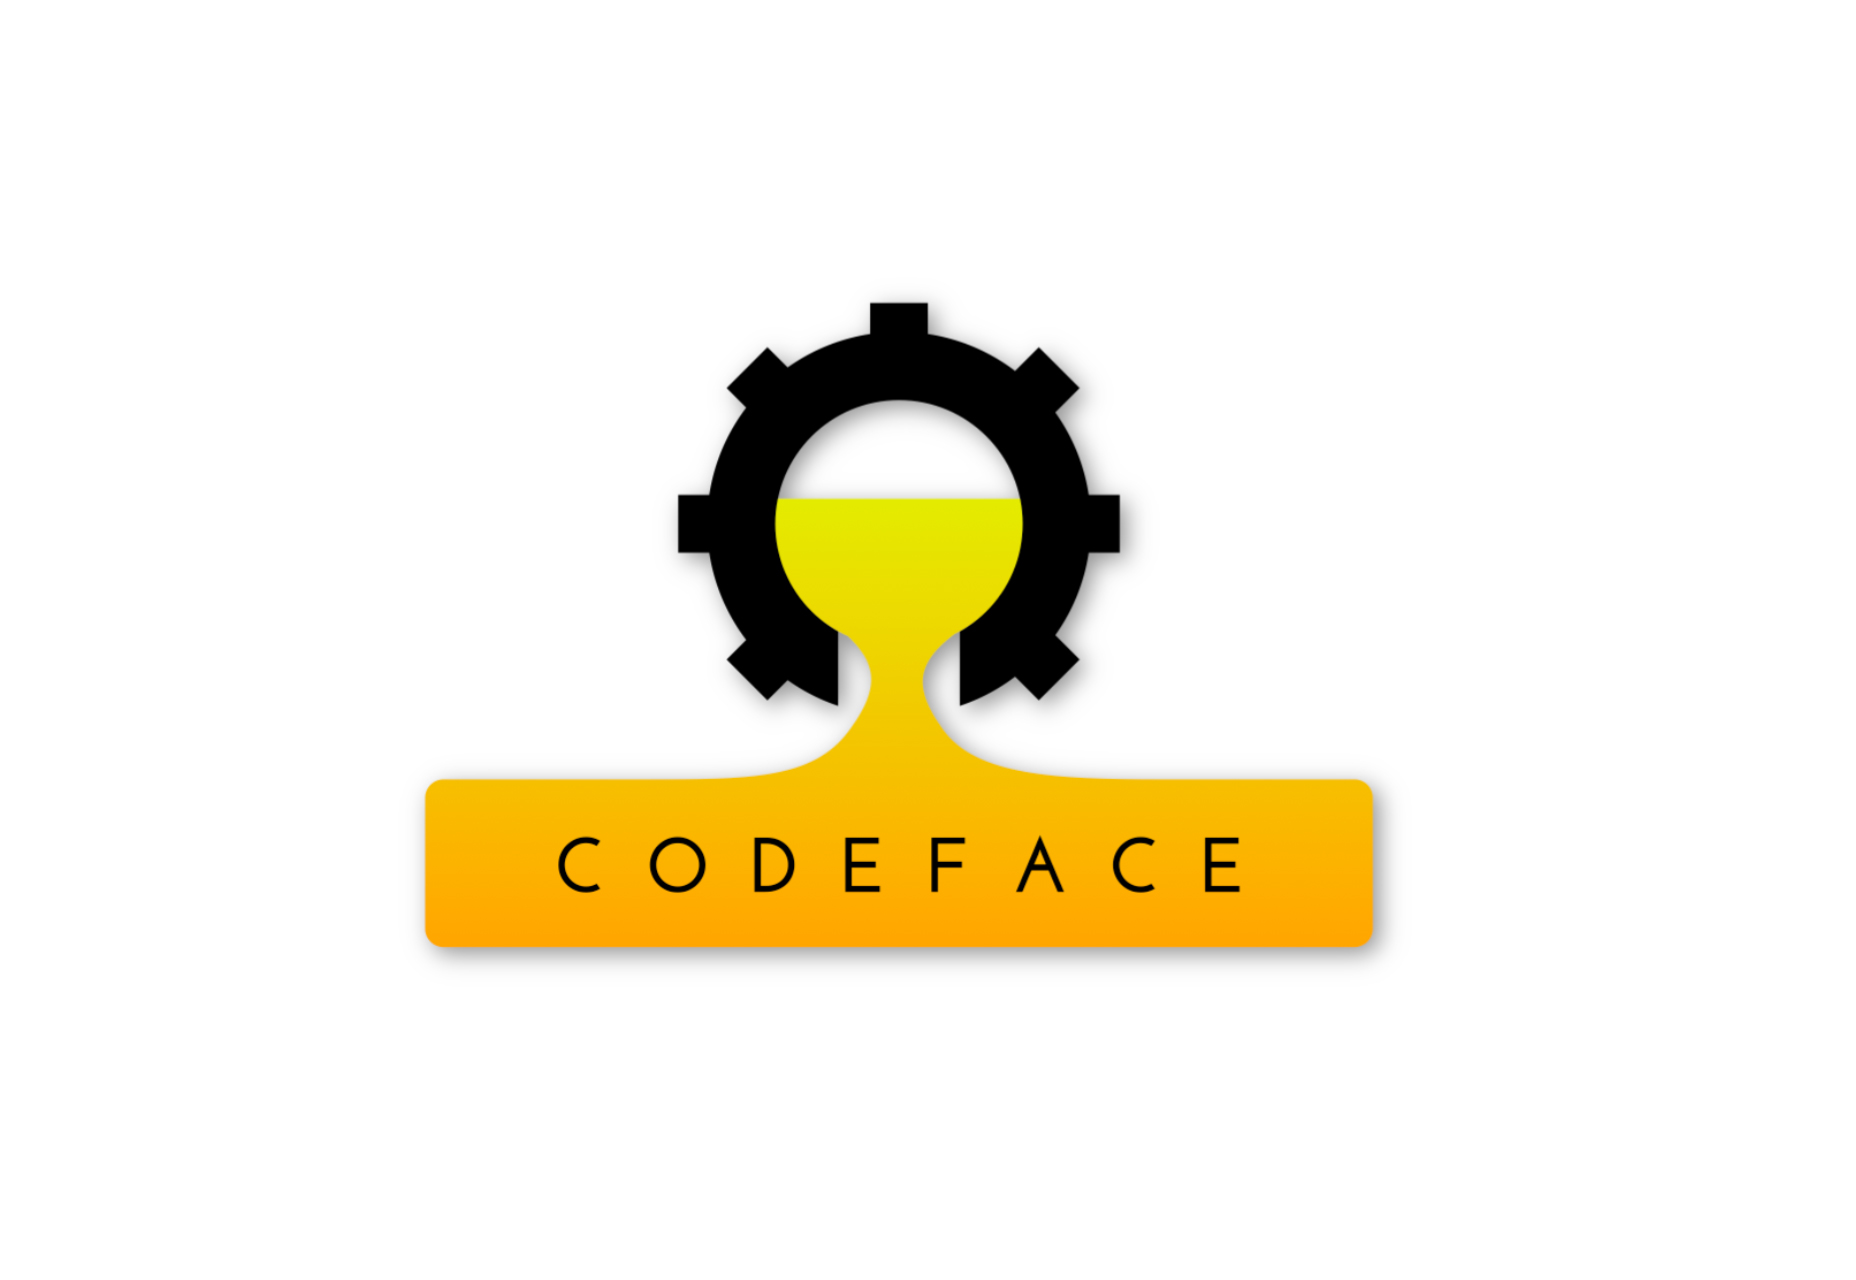 Codeface: مجموعة من الخطوط التطويرية